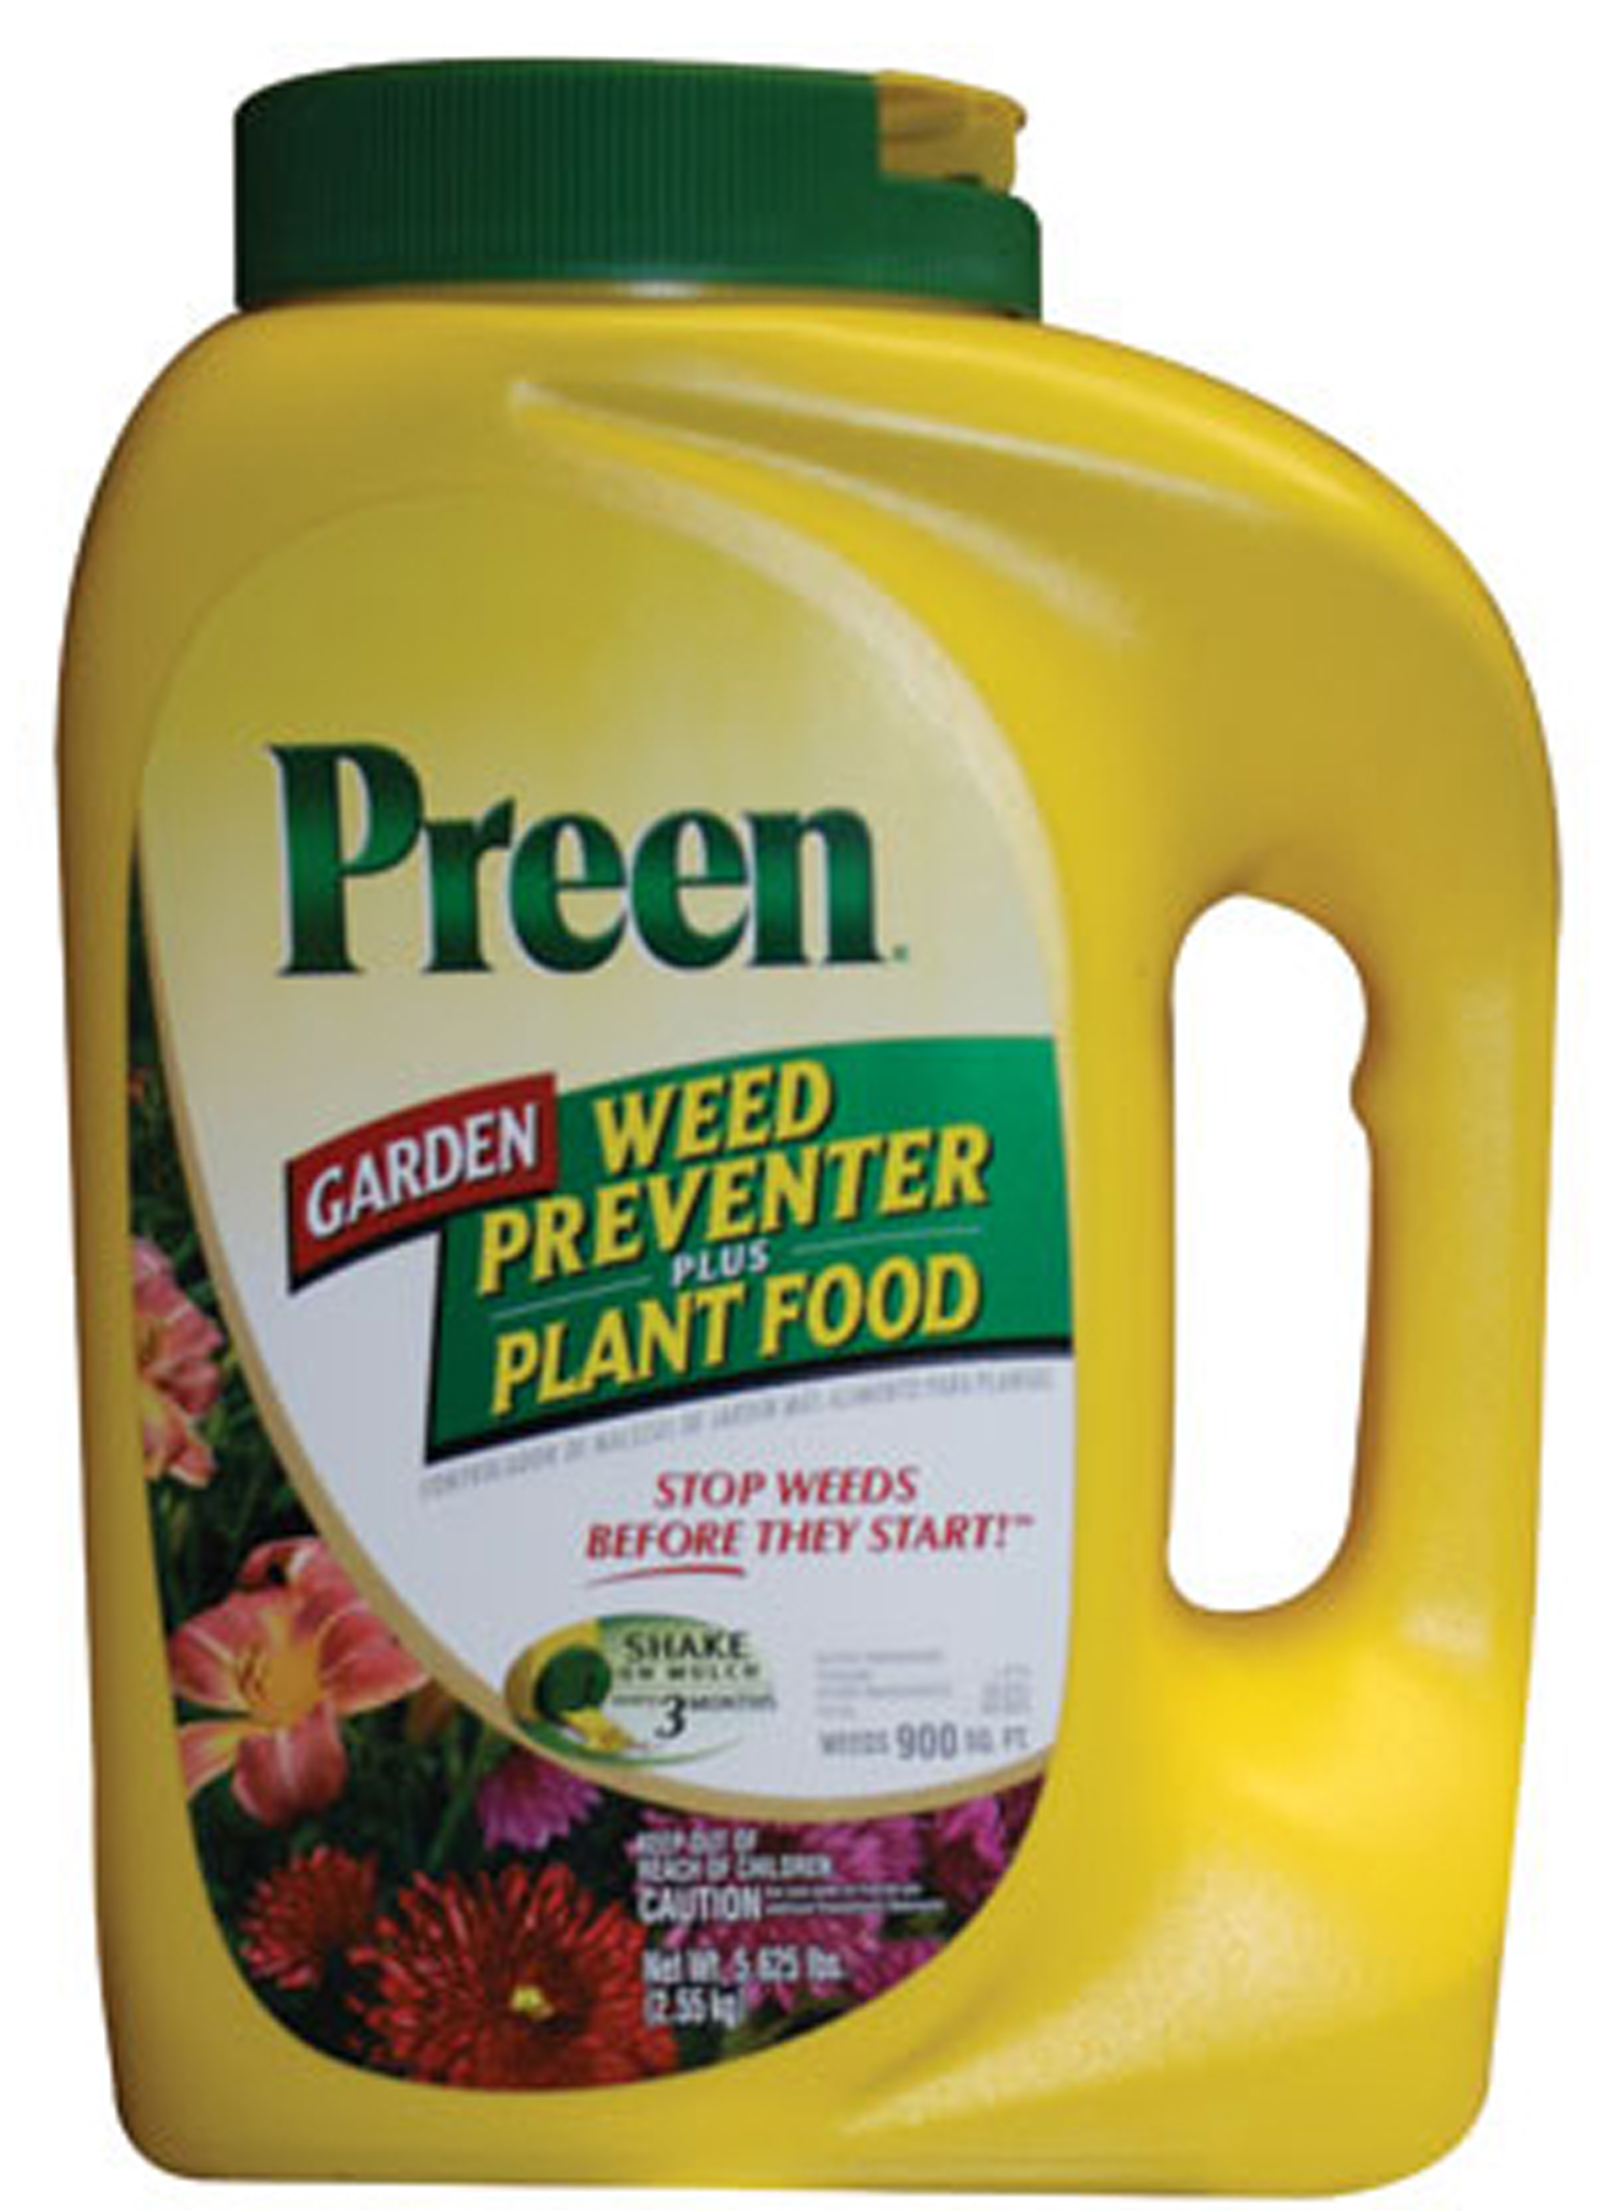 Lebanon Seaboard Preen G81 2163902X Preen Garden Weed Preventer Plus 